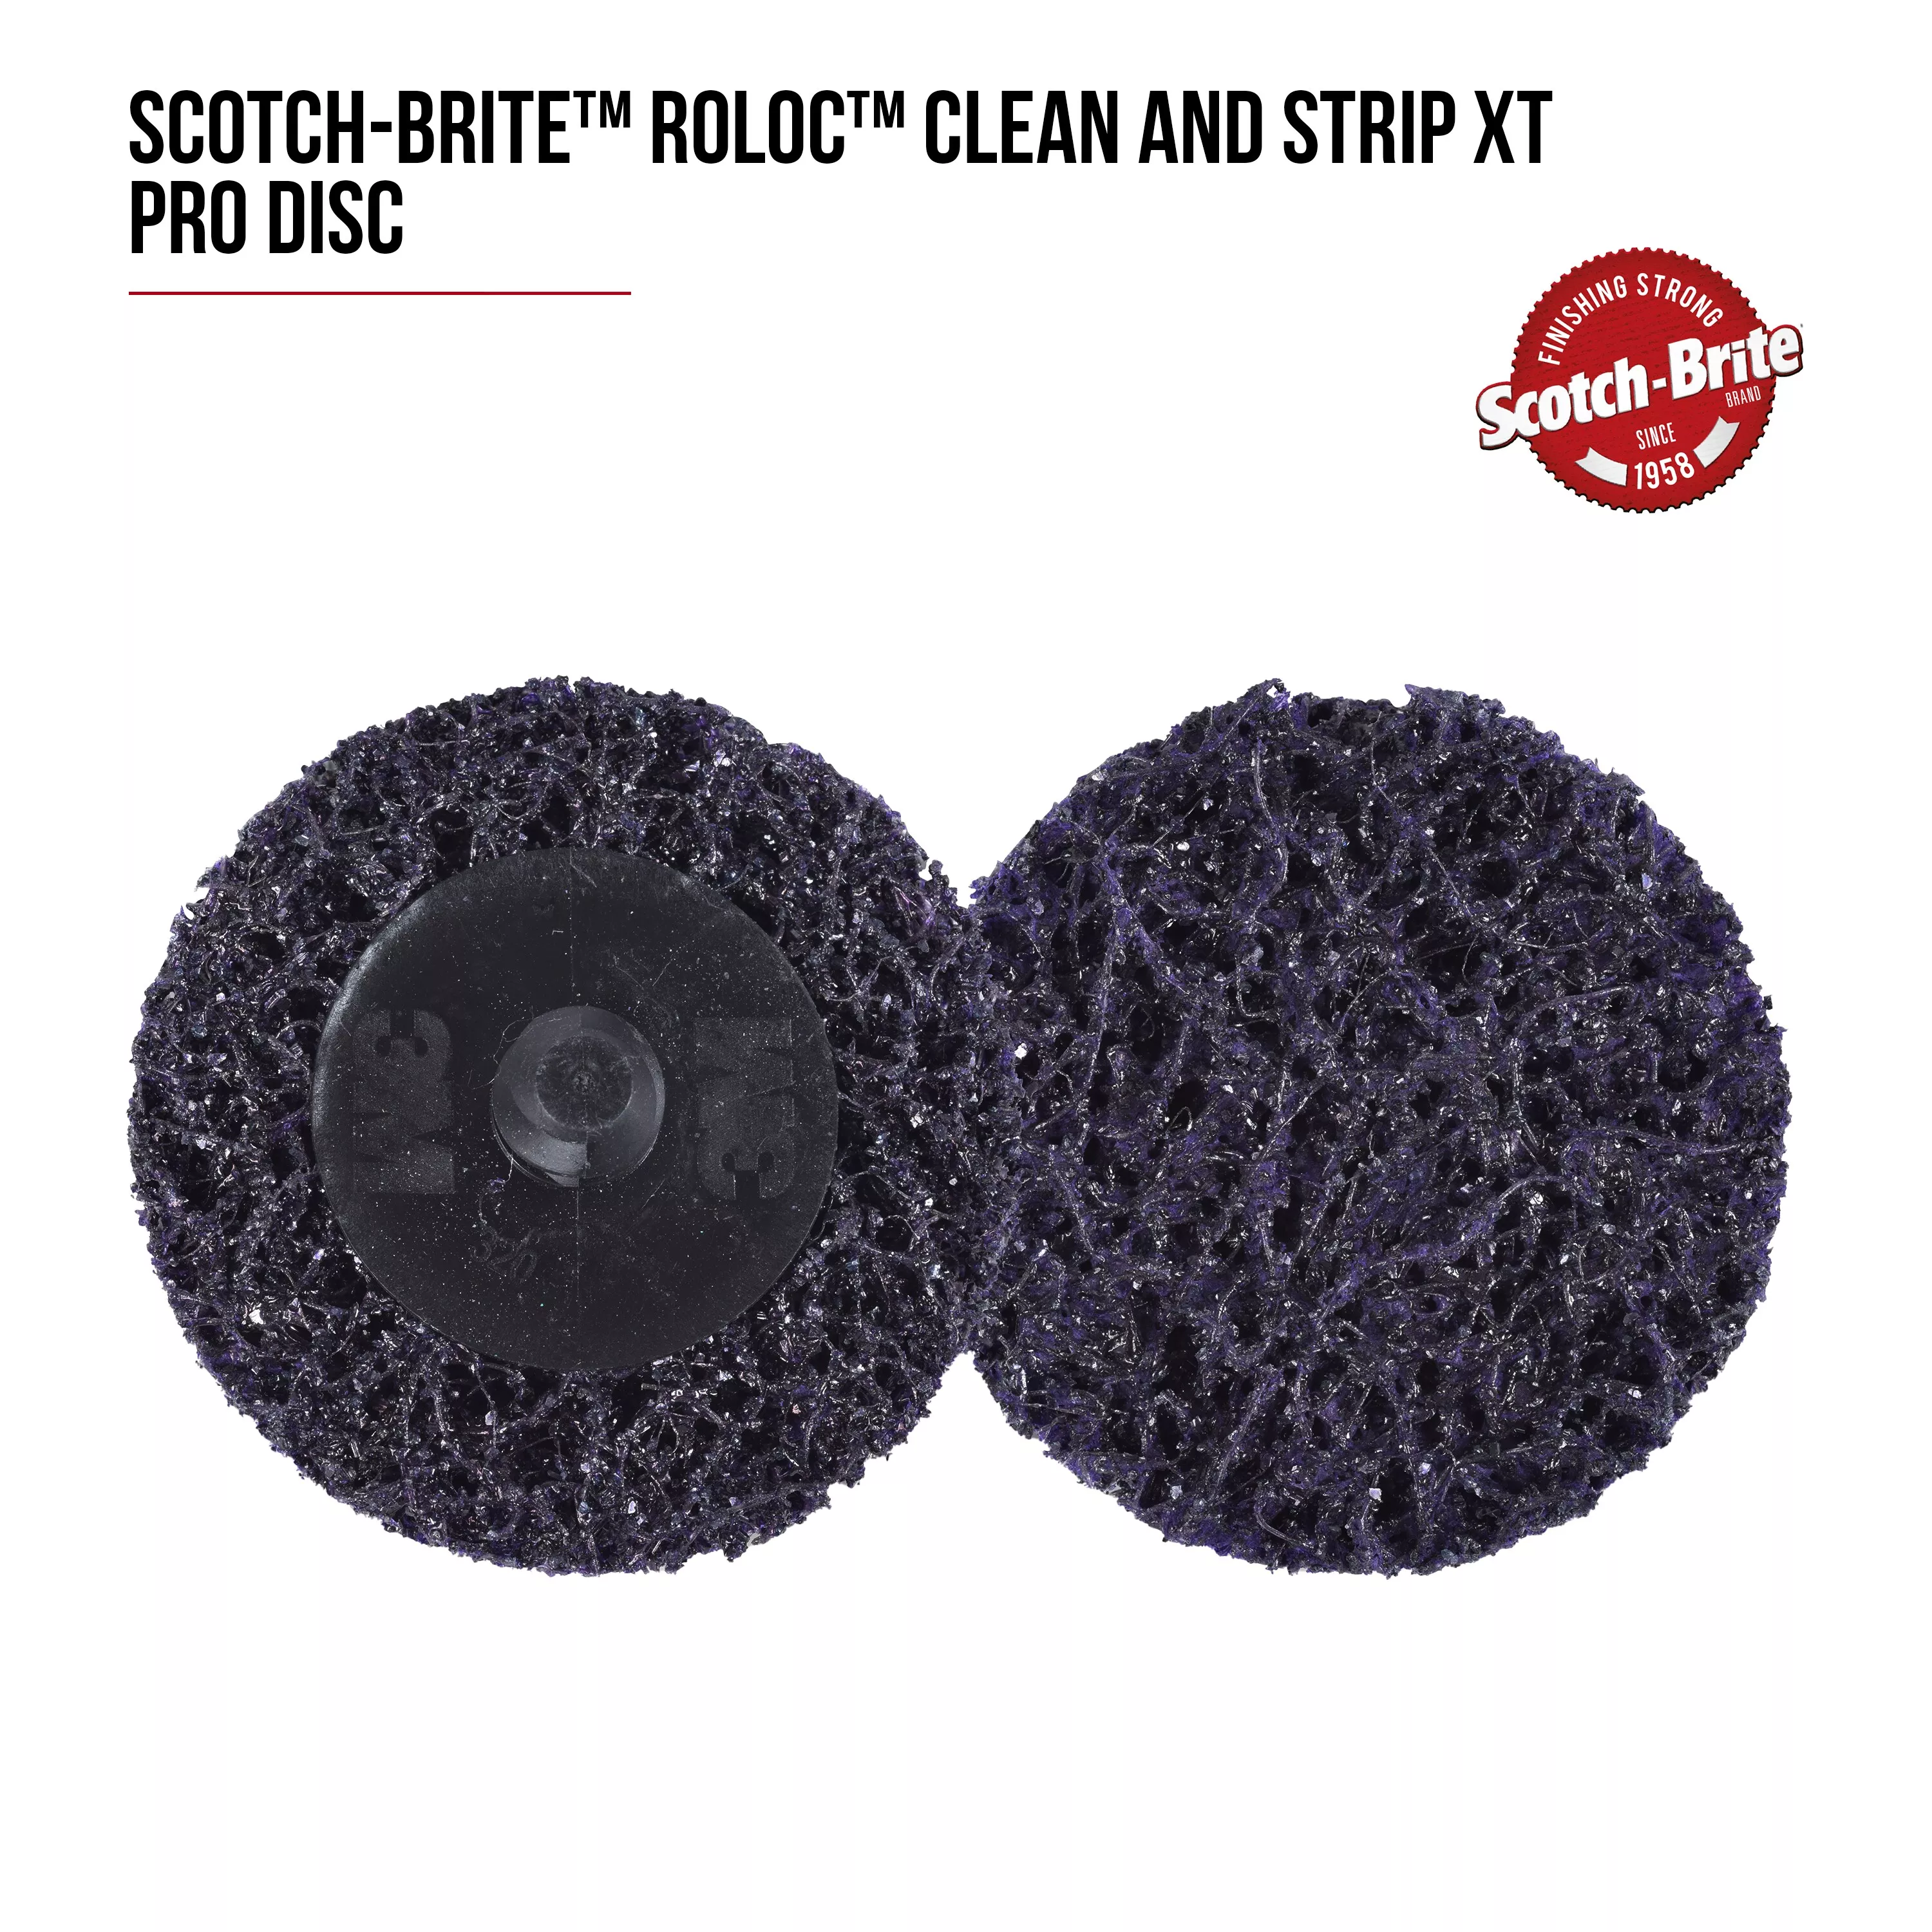 SKU 7100258623 | Scotch-Brite™ Roloc™ Clean and Strip XT Pro Disc